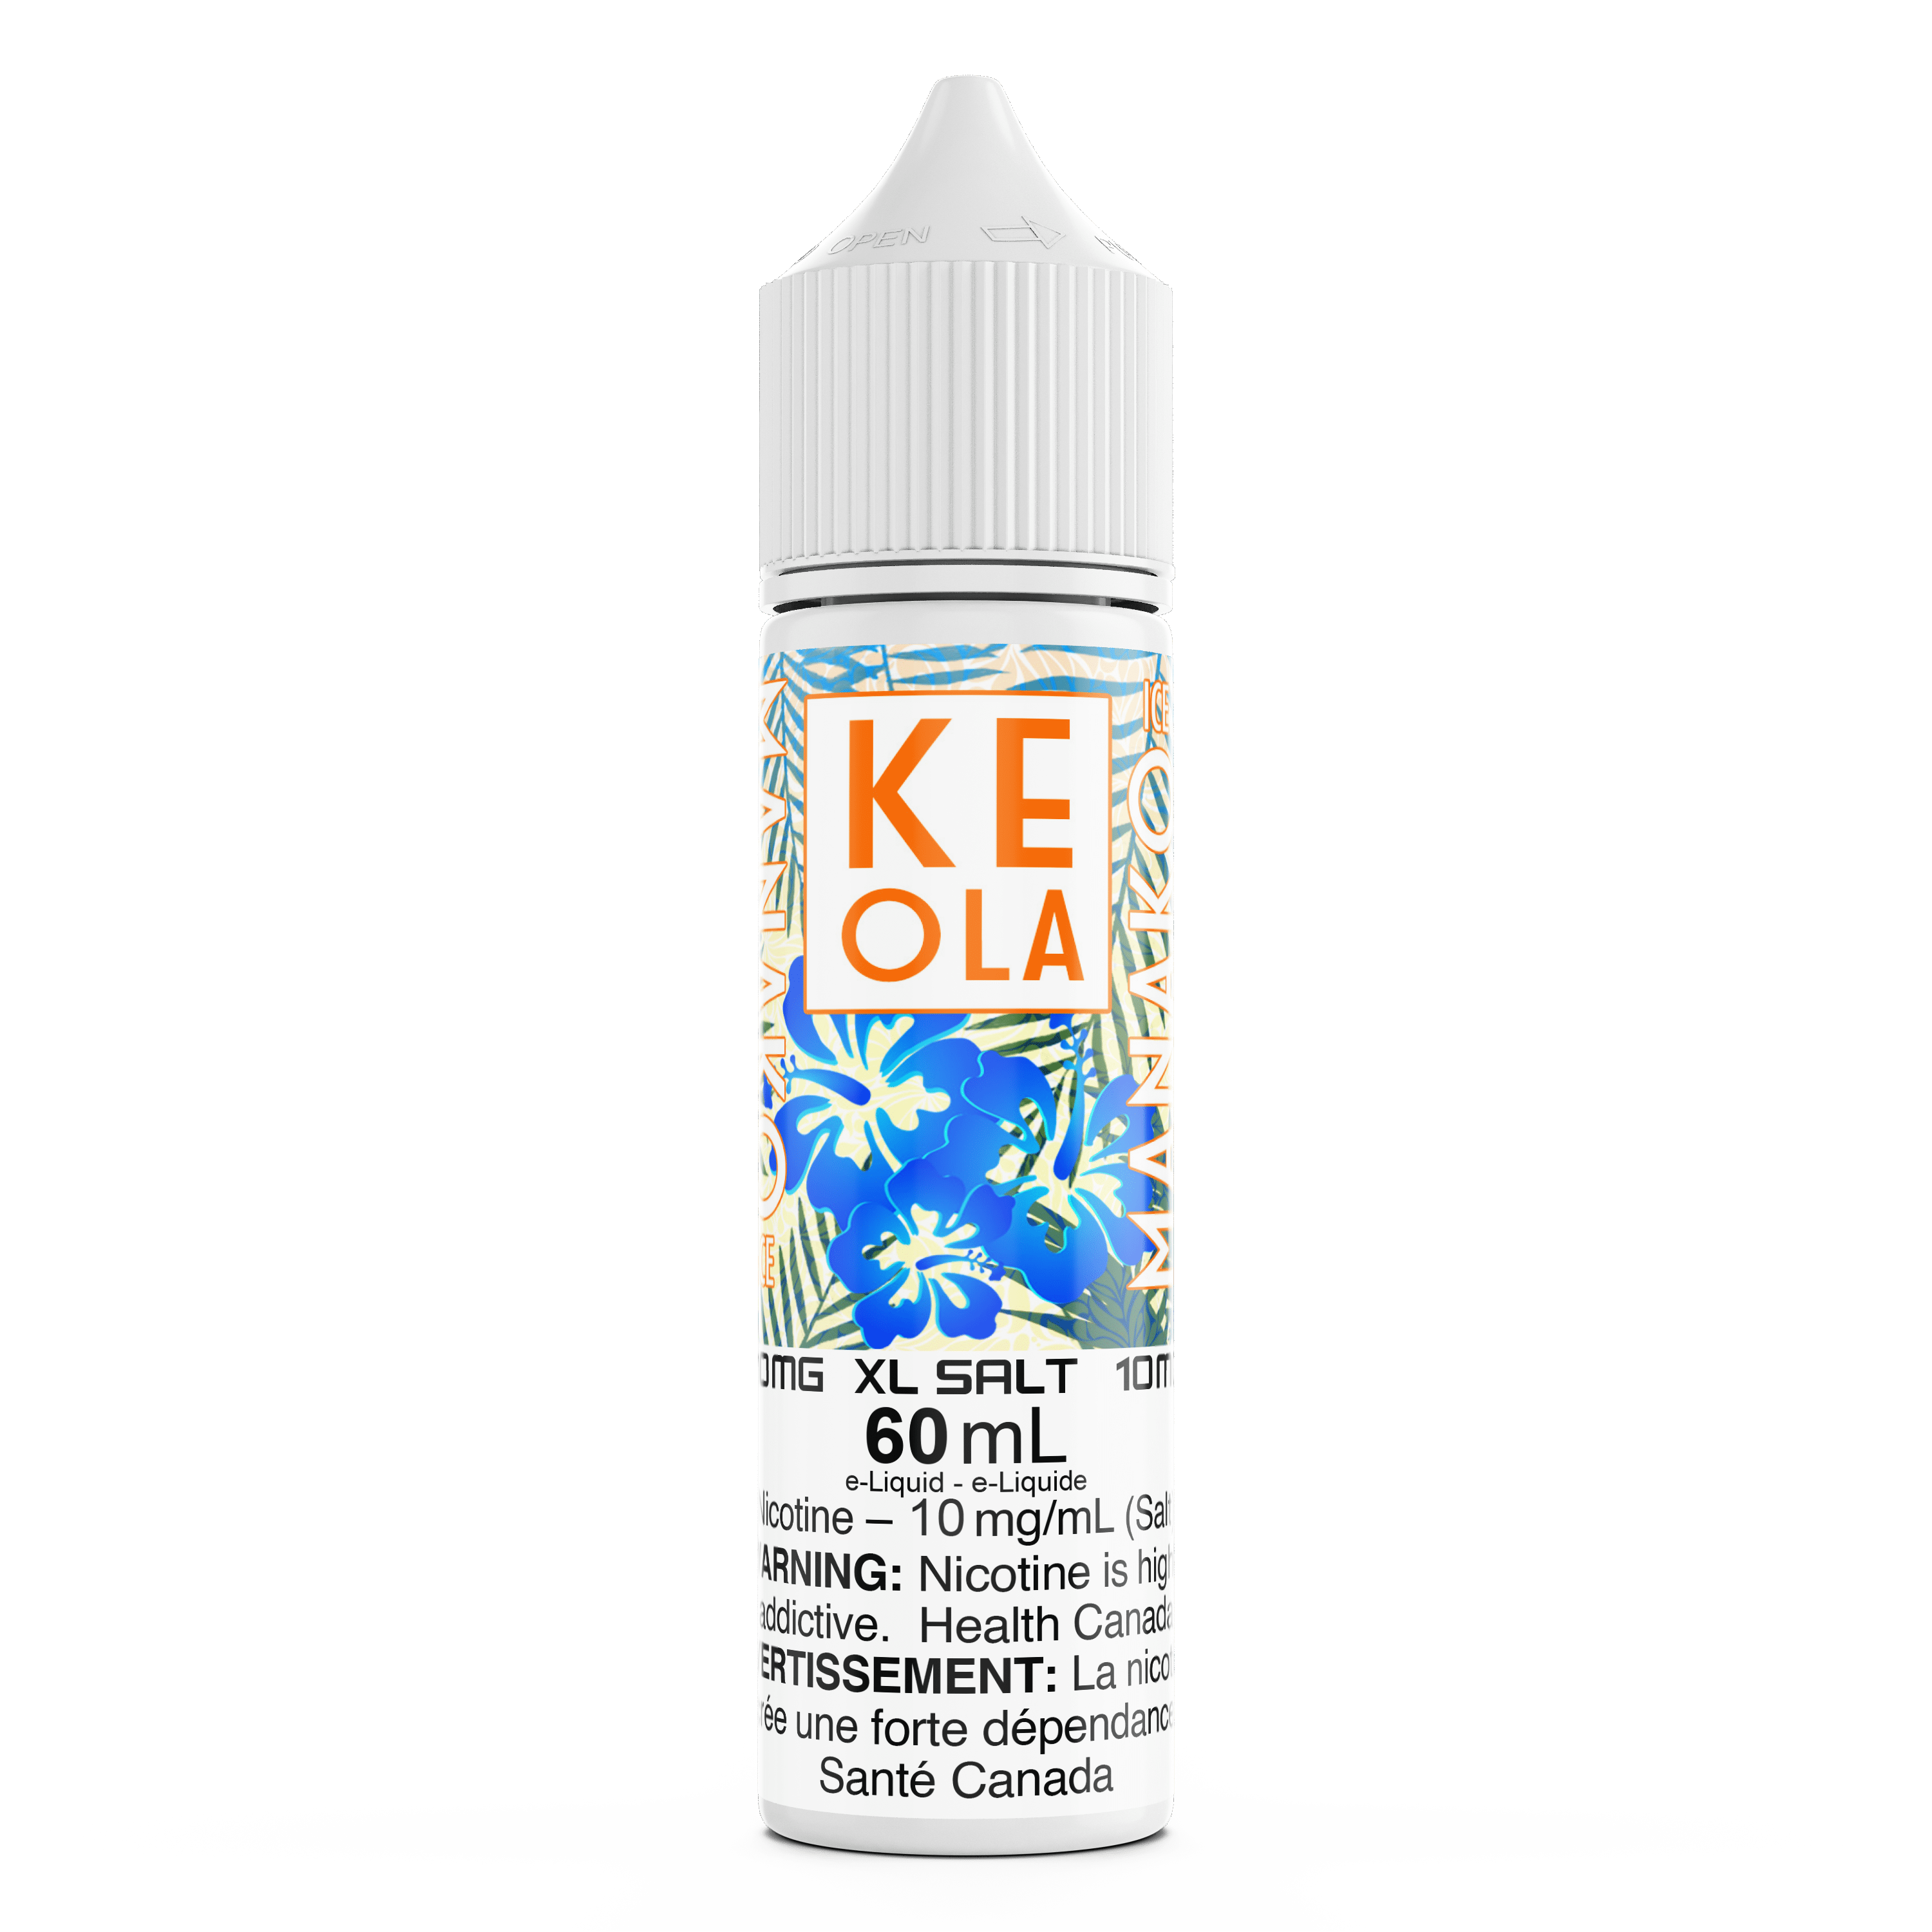 KEOLA XL SALT - MANAKO ICED available on Canada online vape shop